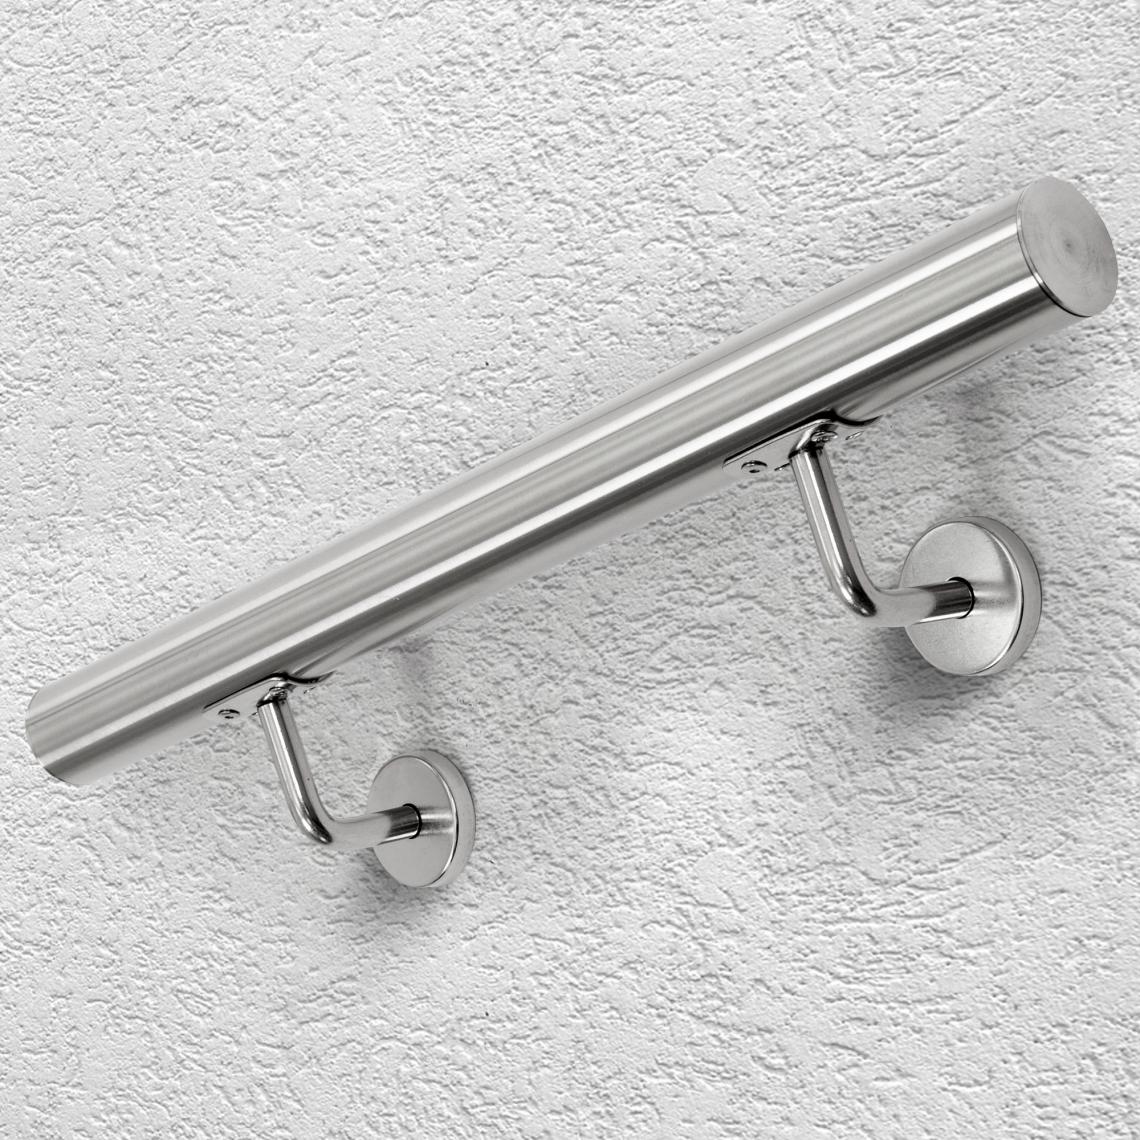 Ecd Germany - Main courante escalier en acier inoxydable rampe barre appui rambarde 60 cm - Escalier escamotable